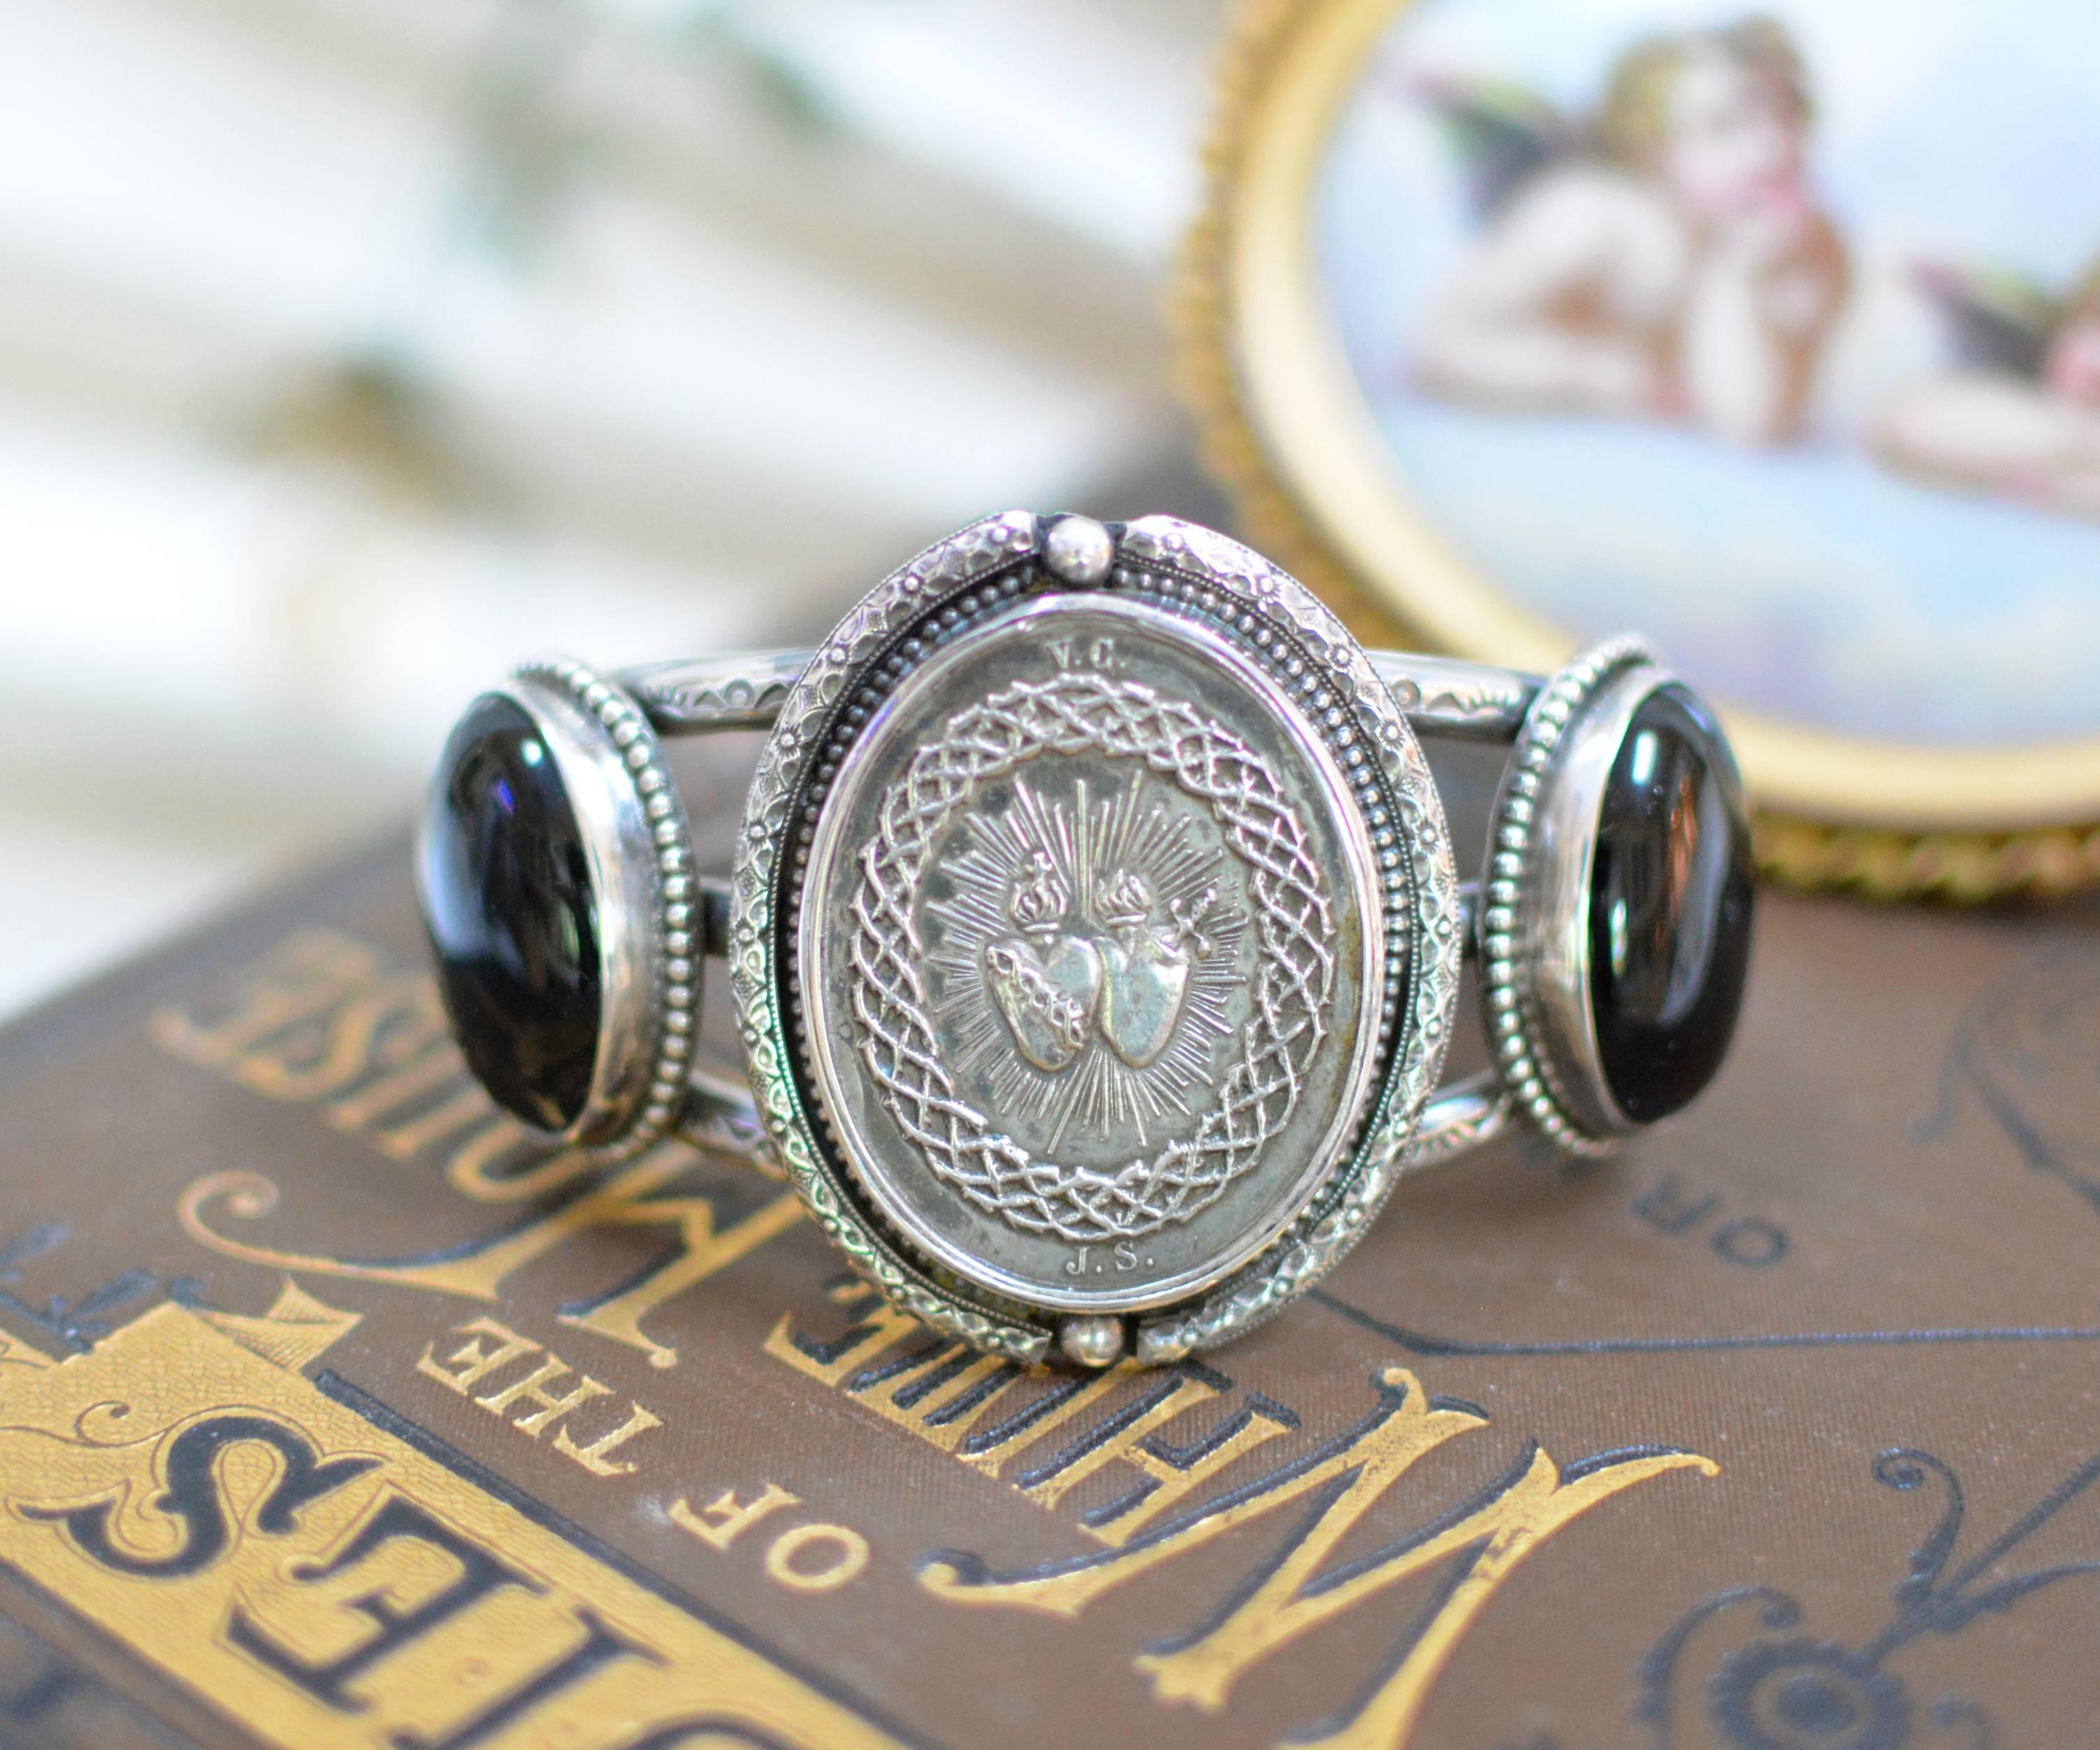 Diese eine von einer Art Sterling Silber Manschette Armband verfügt über eine originale antike neunzehnten Jahrhundert Französisch Sacred Heart Medal. Eingerahmt von einer kunstvollen Gravur und Perlenstickerei, haben wir auf beiden Seiten ein Paar